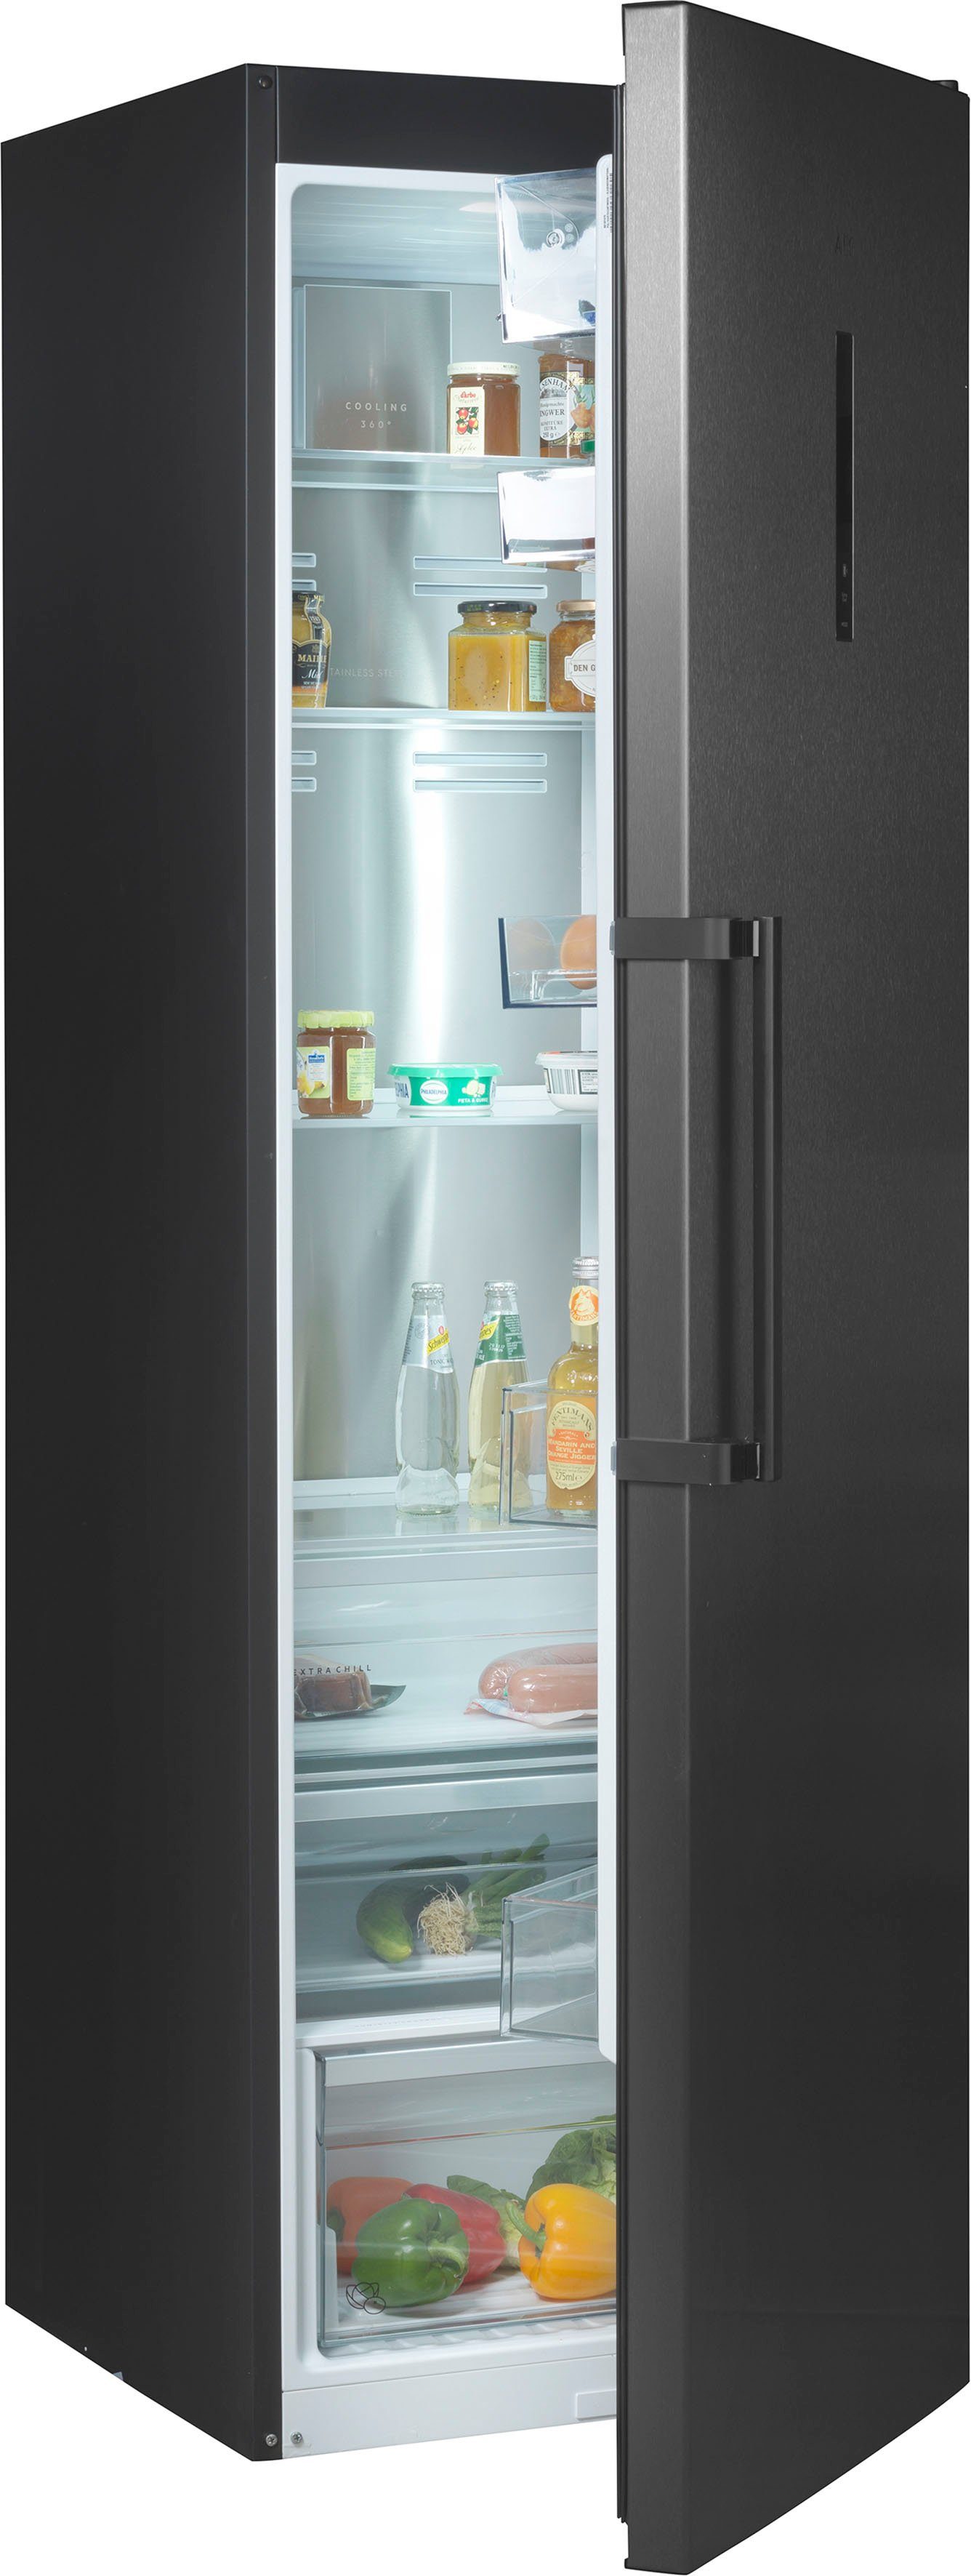 AEG Kühlschrank RKB738E5MB, 186 cm hoch, 59,5 cm breit, TwinTech® –  getrennte Luftzirkulation zwischen Kühl- und 0 °C Kaltraum